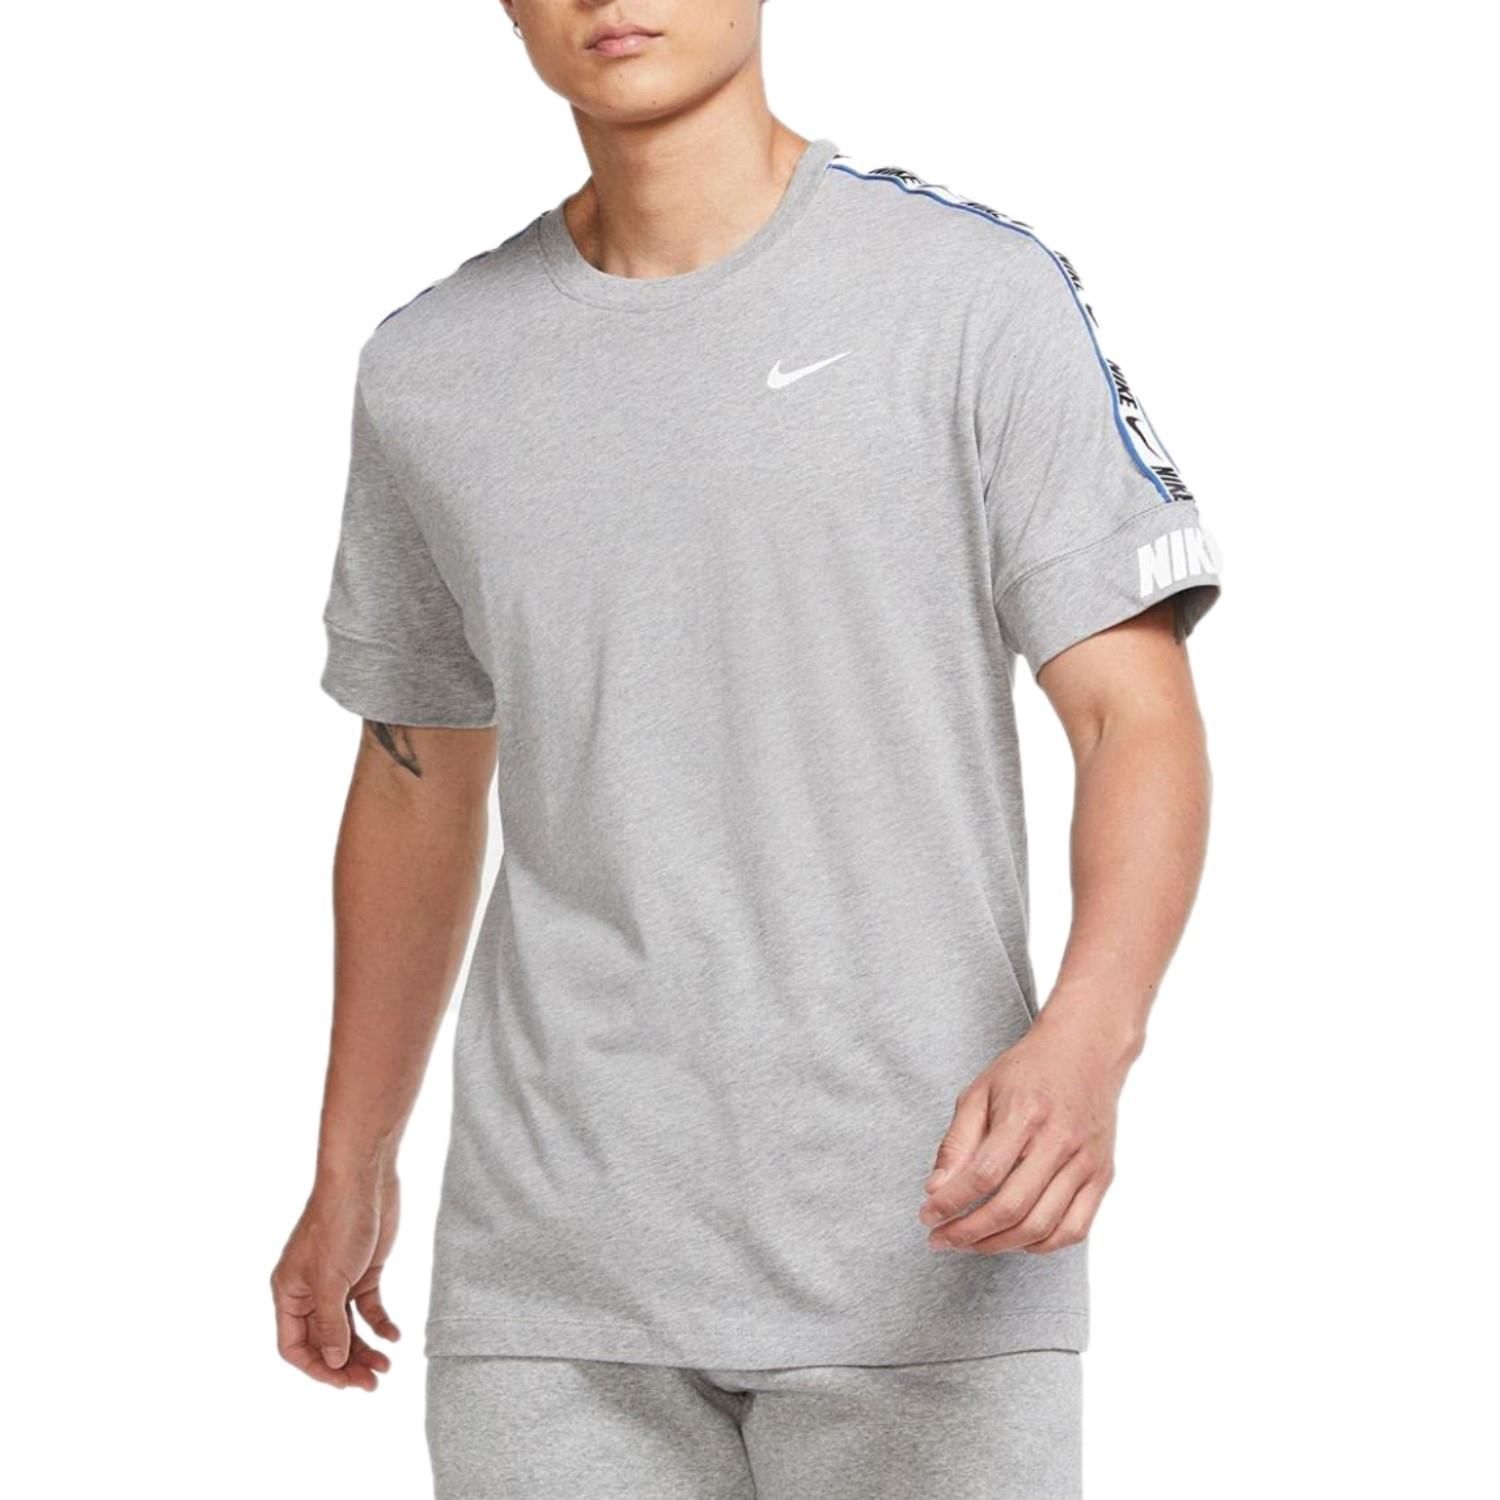 Nike Mens NSW Repeat T Shirt Grey